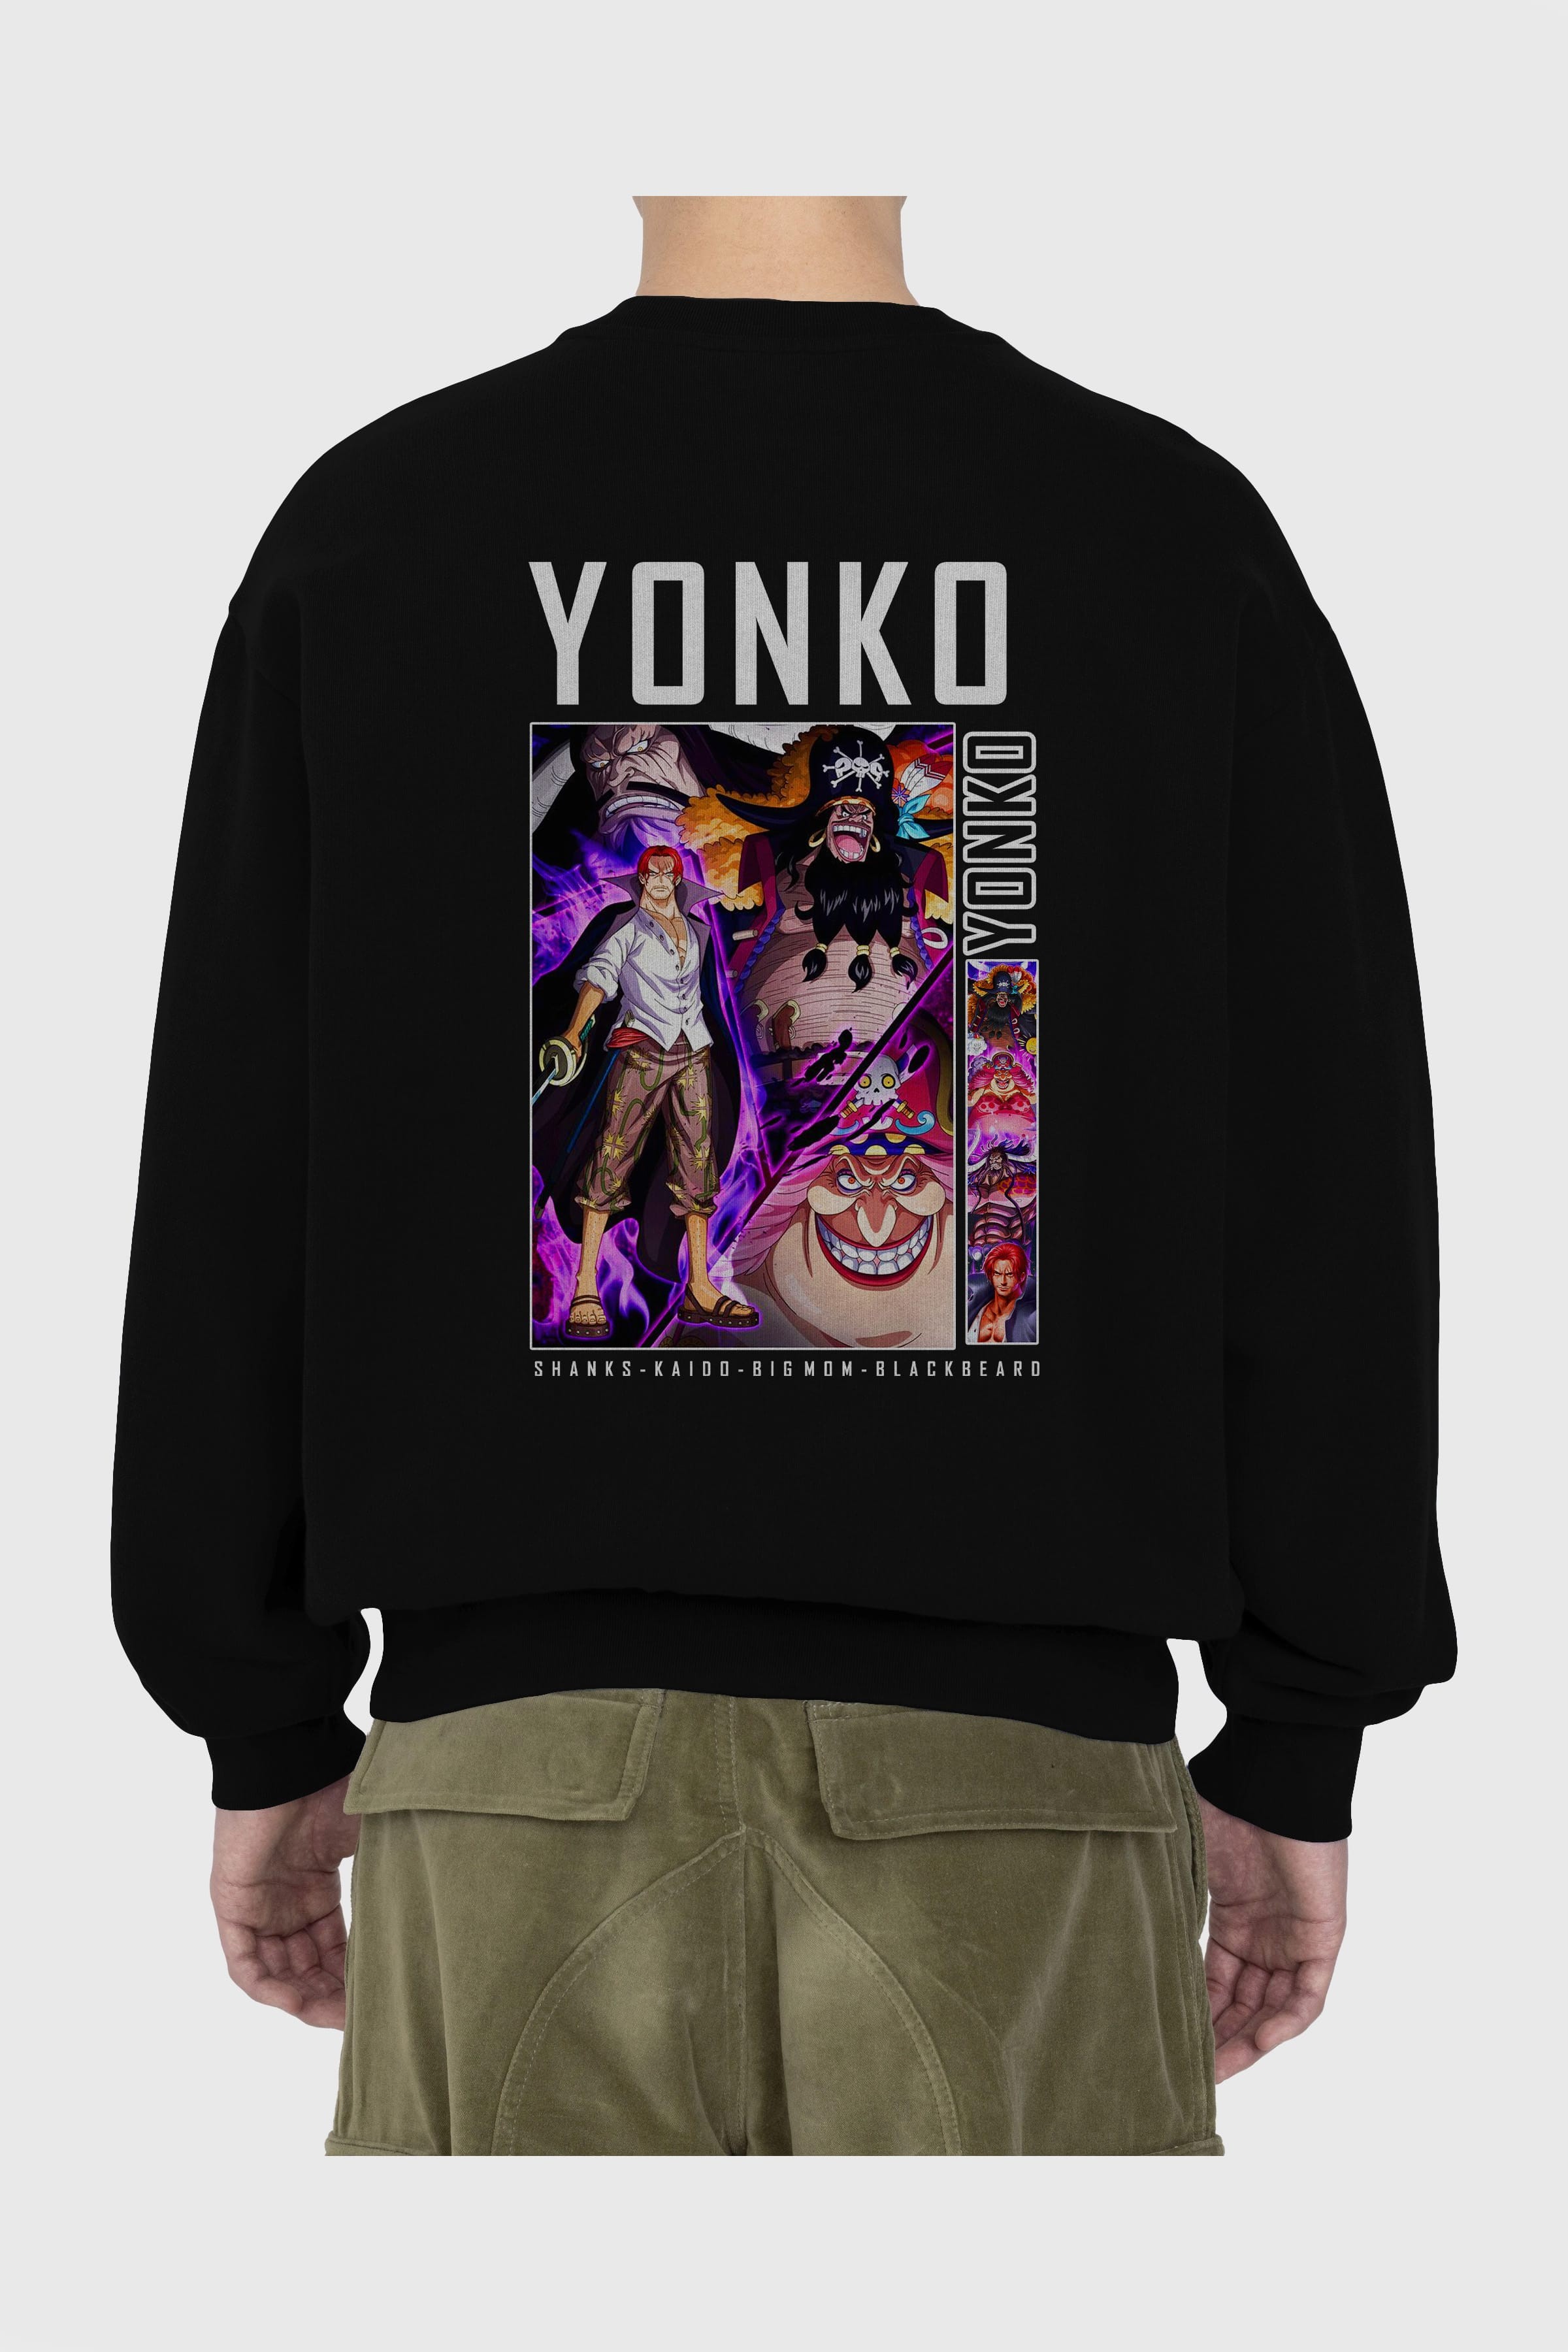 Yonko Arka Baskılı Anime Oversize Sweatshirt Erkek Kadın Unisex